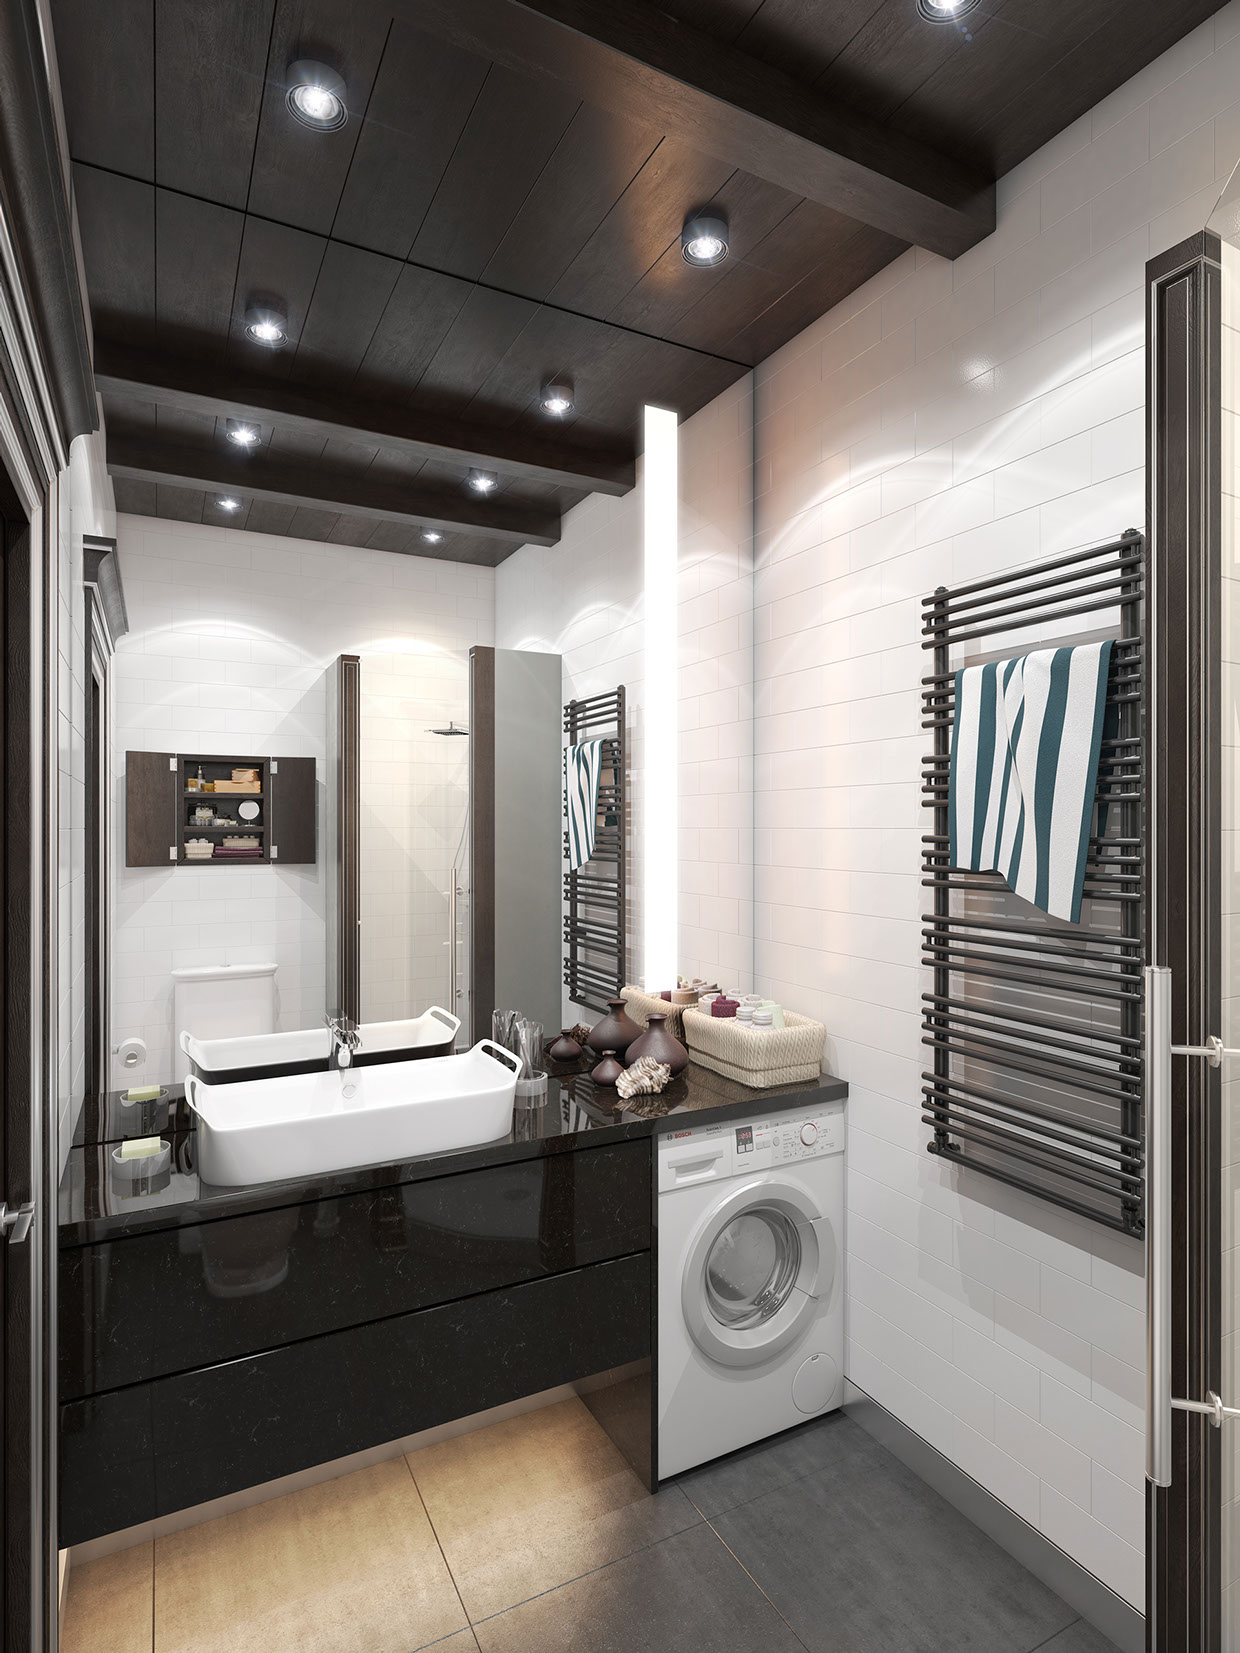 9-cool-tiled-bathroom-design